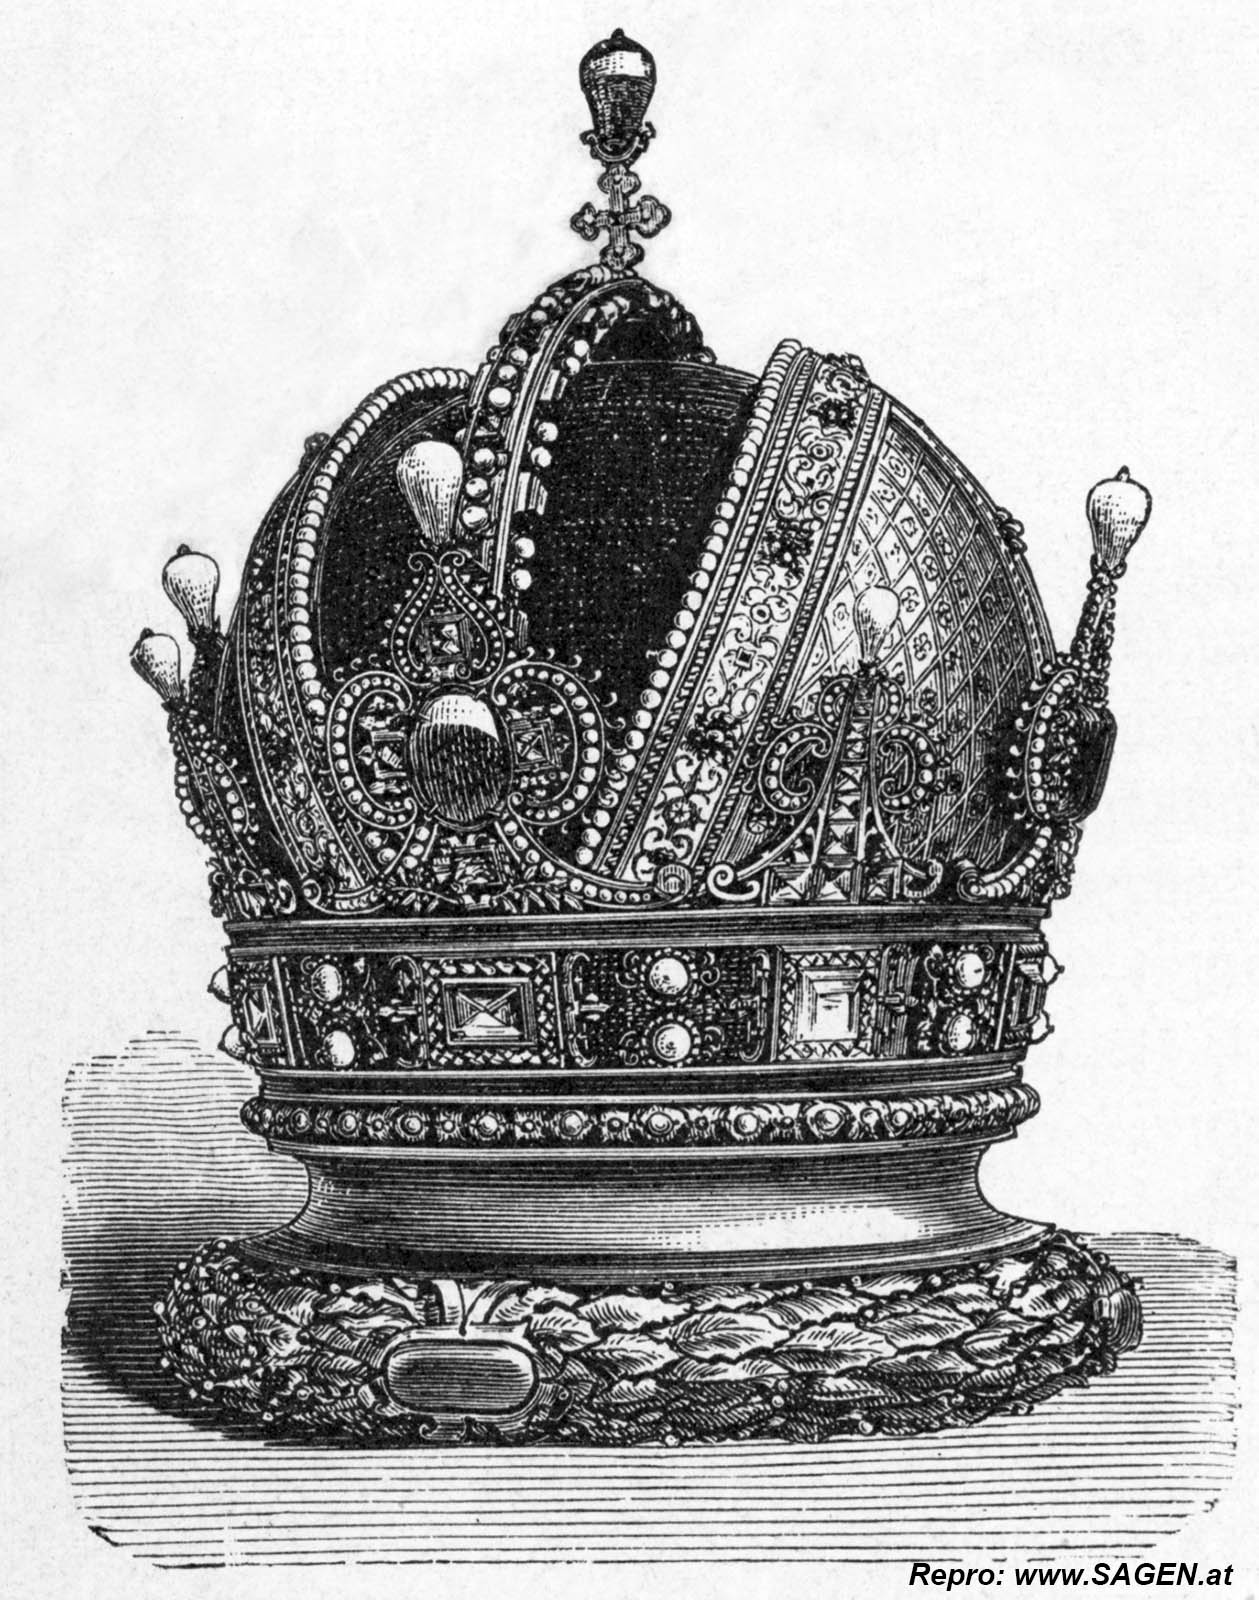 Wien, Weltausstellung 1873, Die Krone am Dach der Rotunde